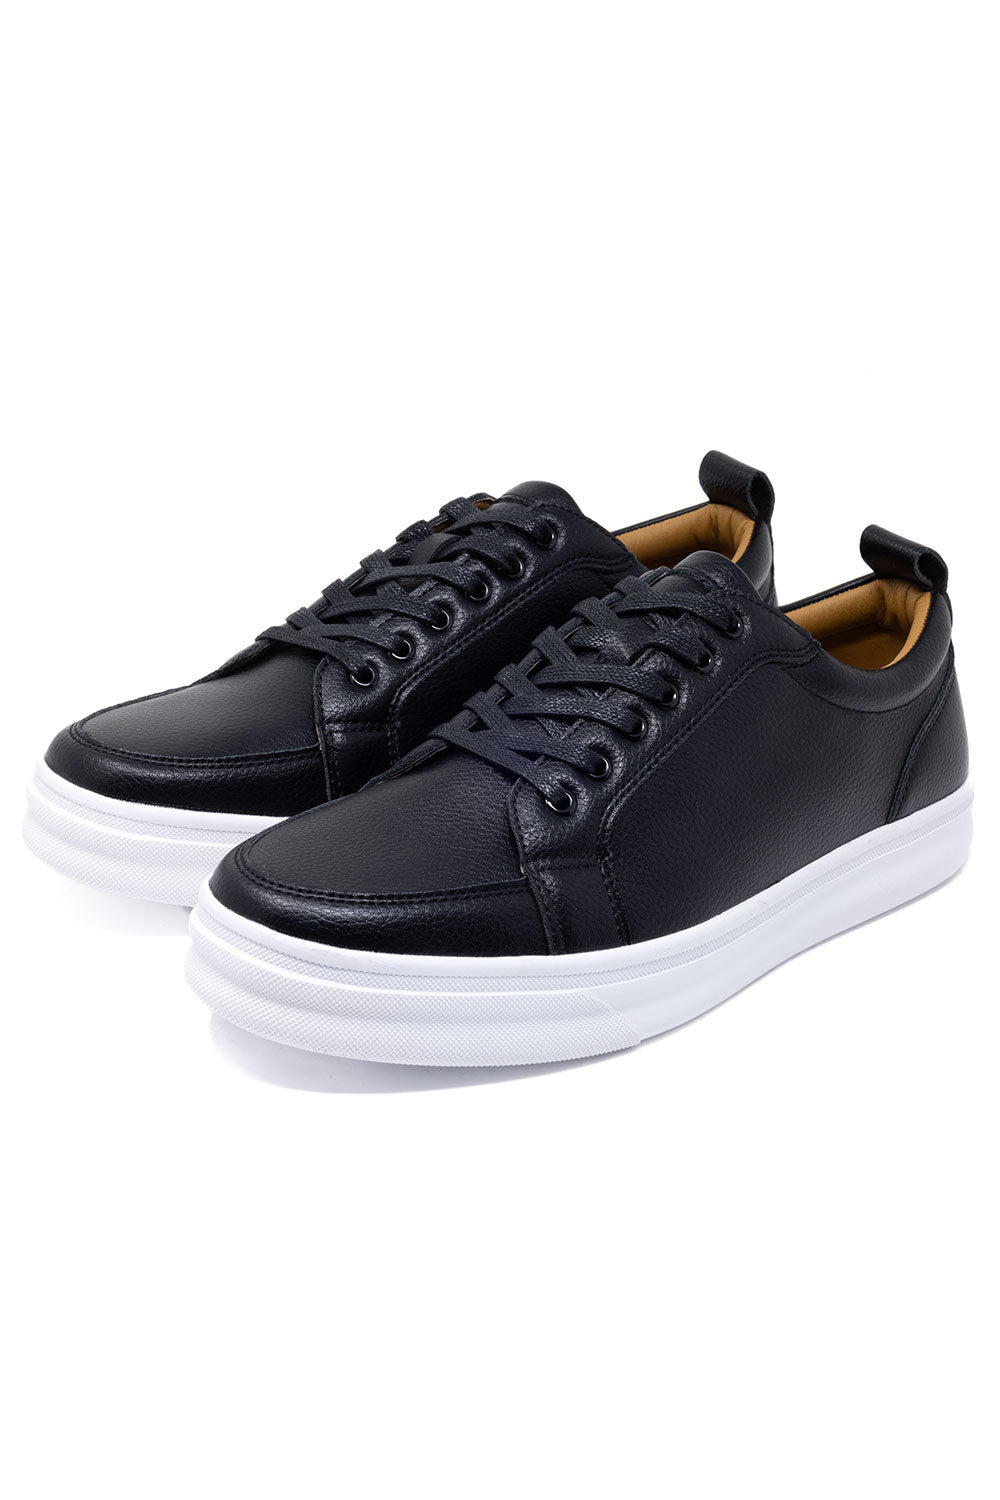 Barabas Men's premium low cut comfortable all-day sneakers 4SK05 Black